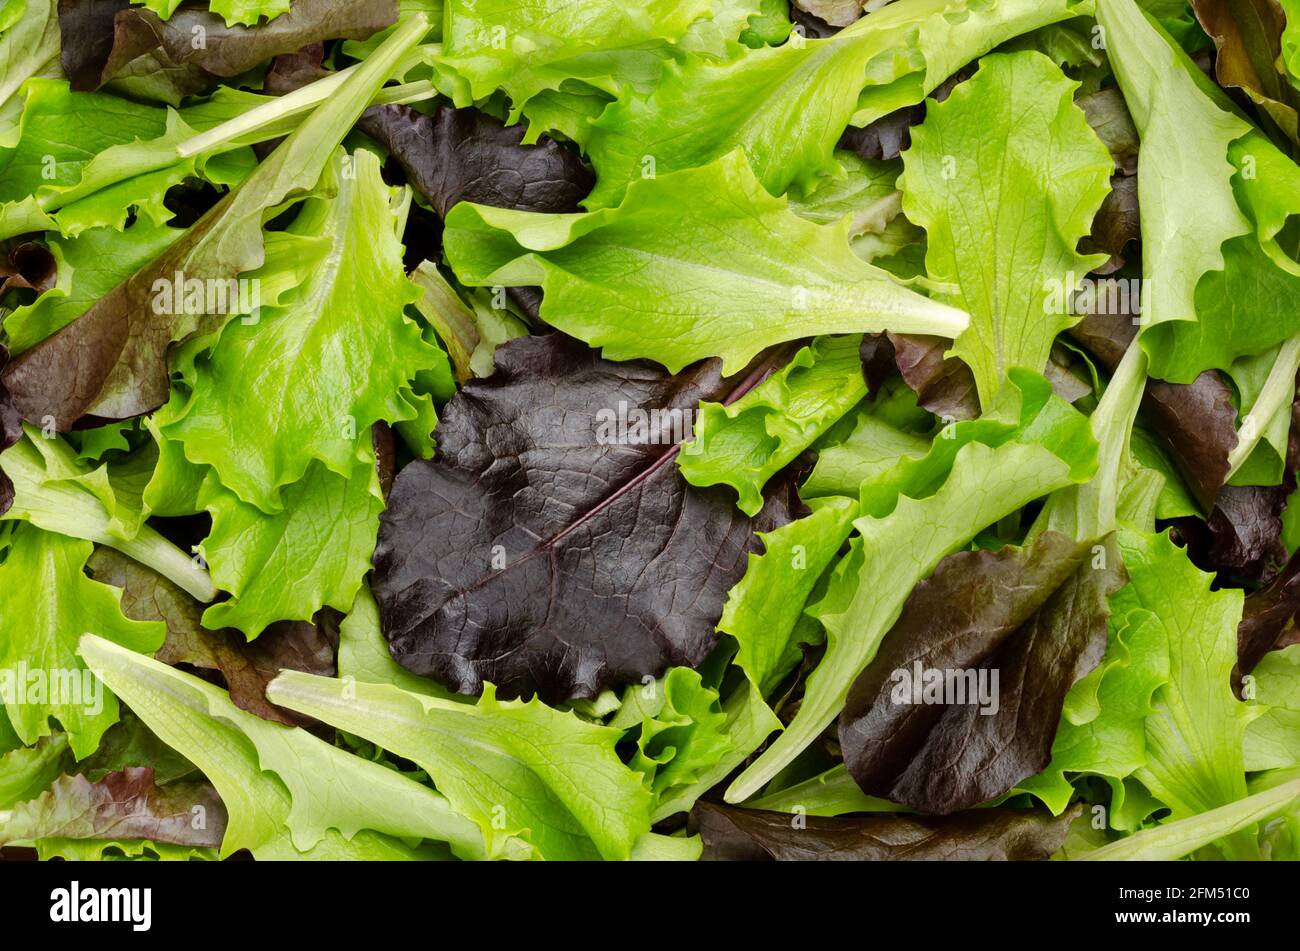 Frisch gepflückter loser Blattsalat, roter und grün blättriger Pflucksalat, Nahaufnahme von oben. Auch bekannt als Pick- oder Looseleaf-Salat, der für Salate verwendet wird. Stockfoto